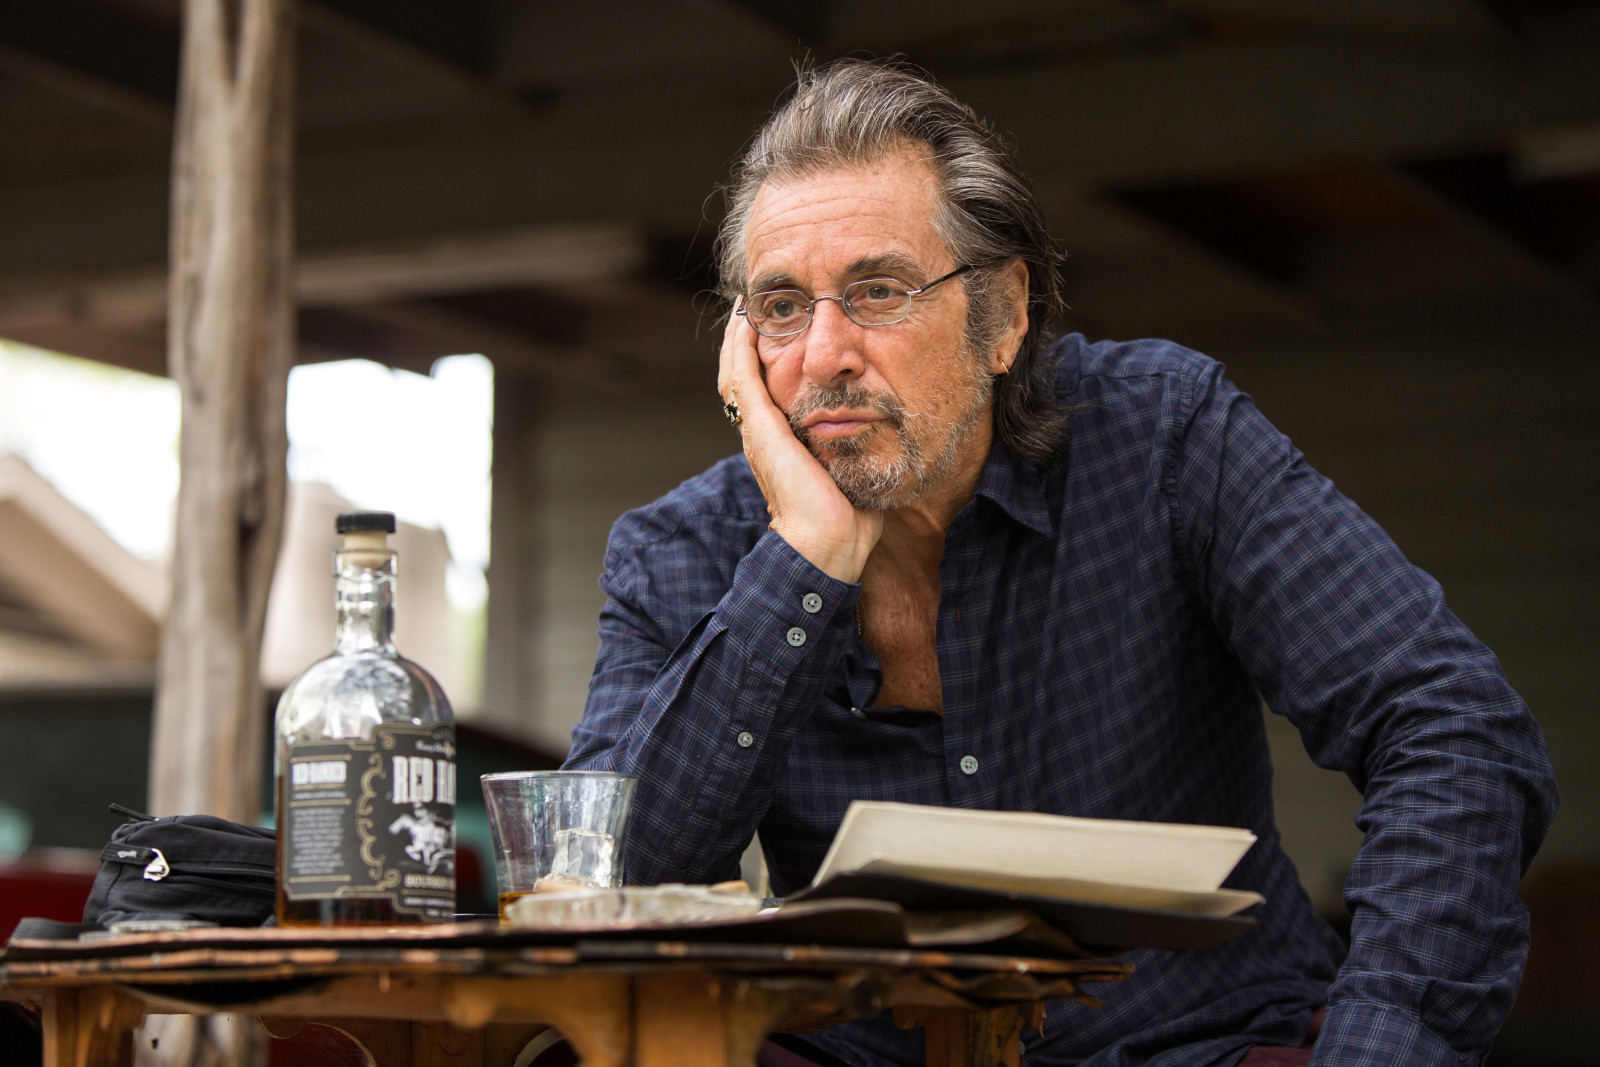 bingkai, meja, kaca, kacamata, aktor, botol, kemeja, Al Pacino